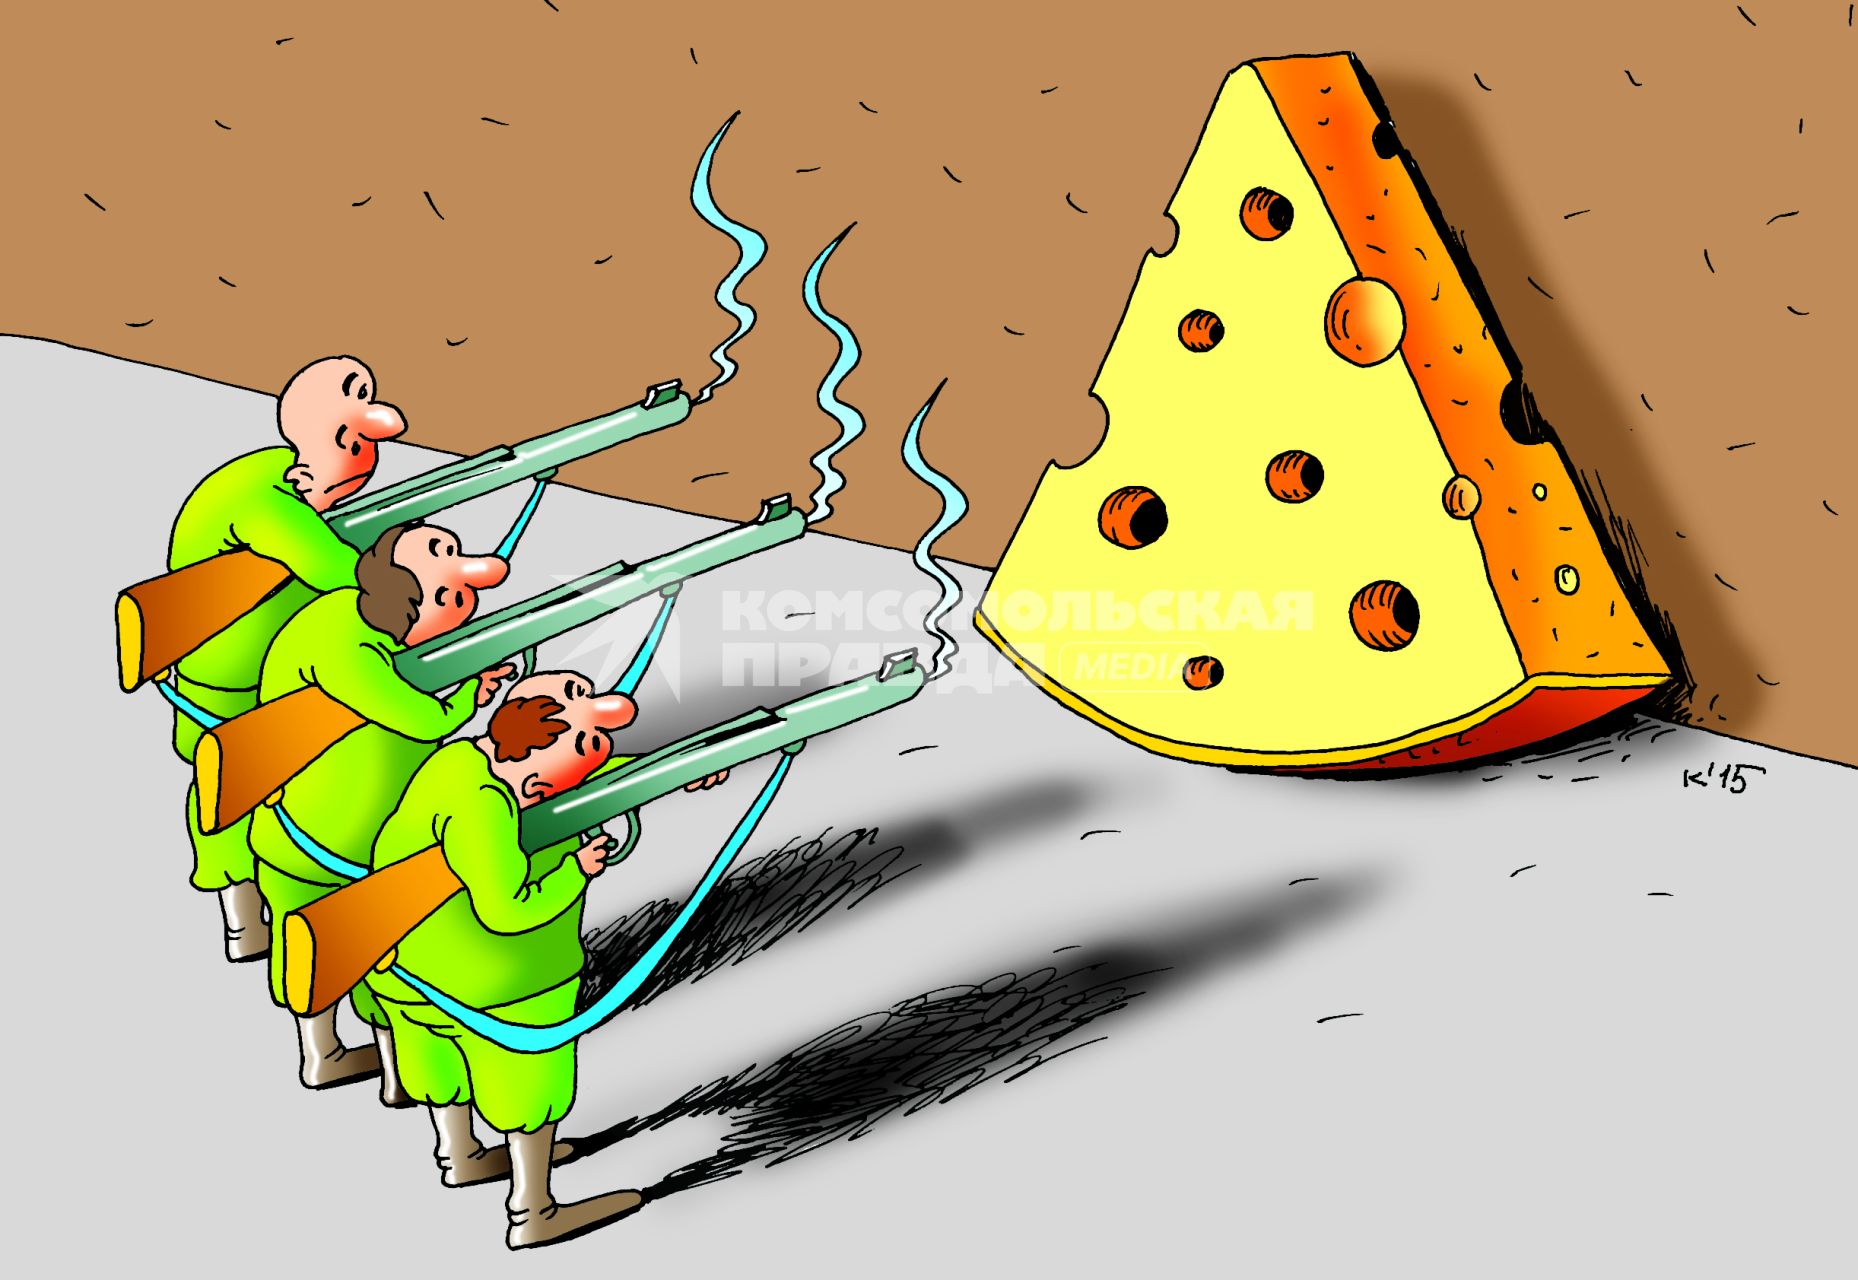 Карикатура на тему санкционных продуктов.